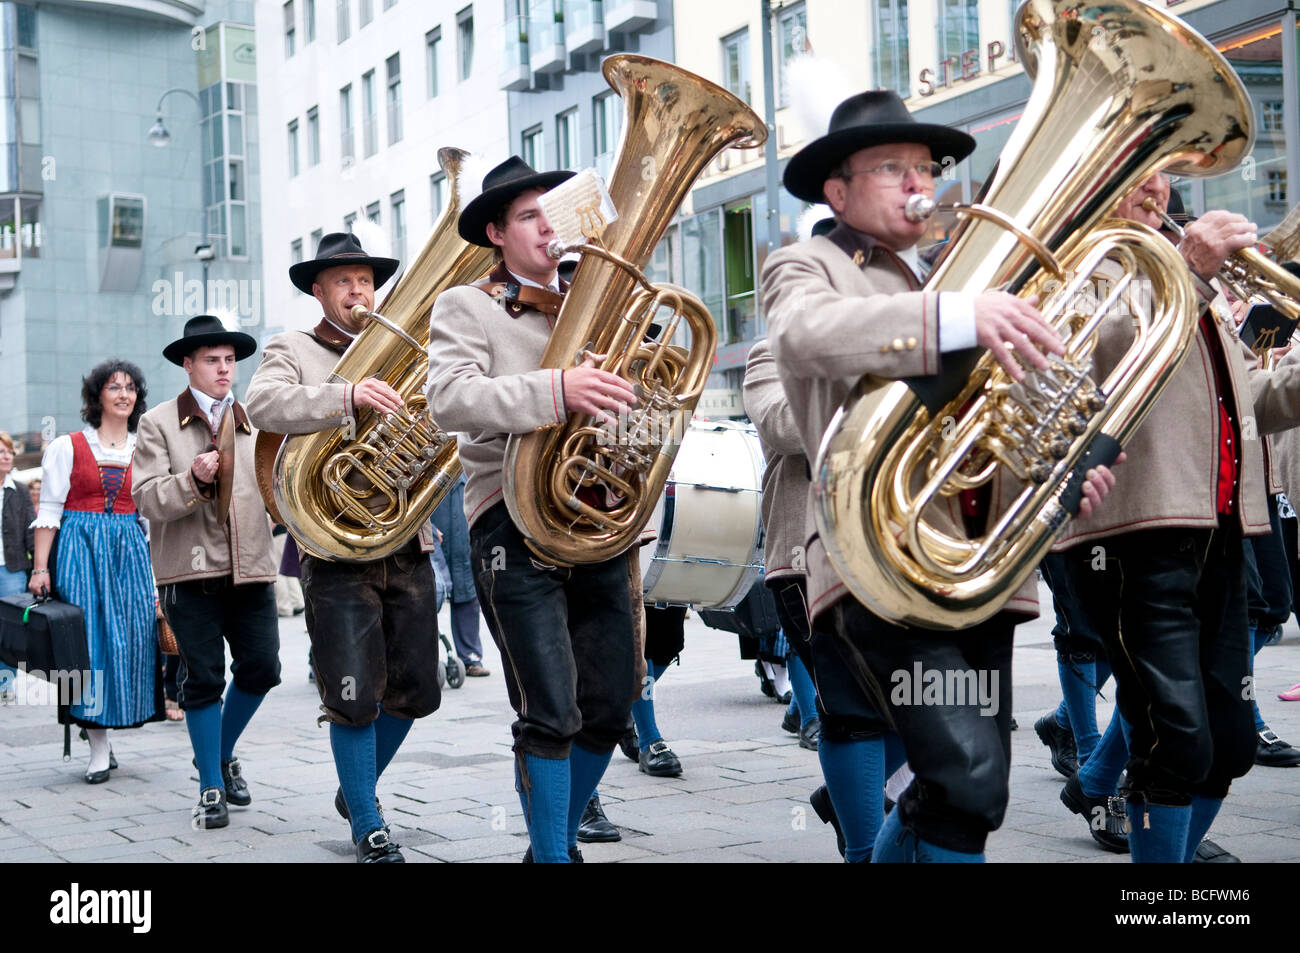 Viena, Austria - banda austriaca en el Stephansdom en Viena, Austria. Foto de stock